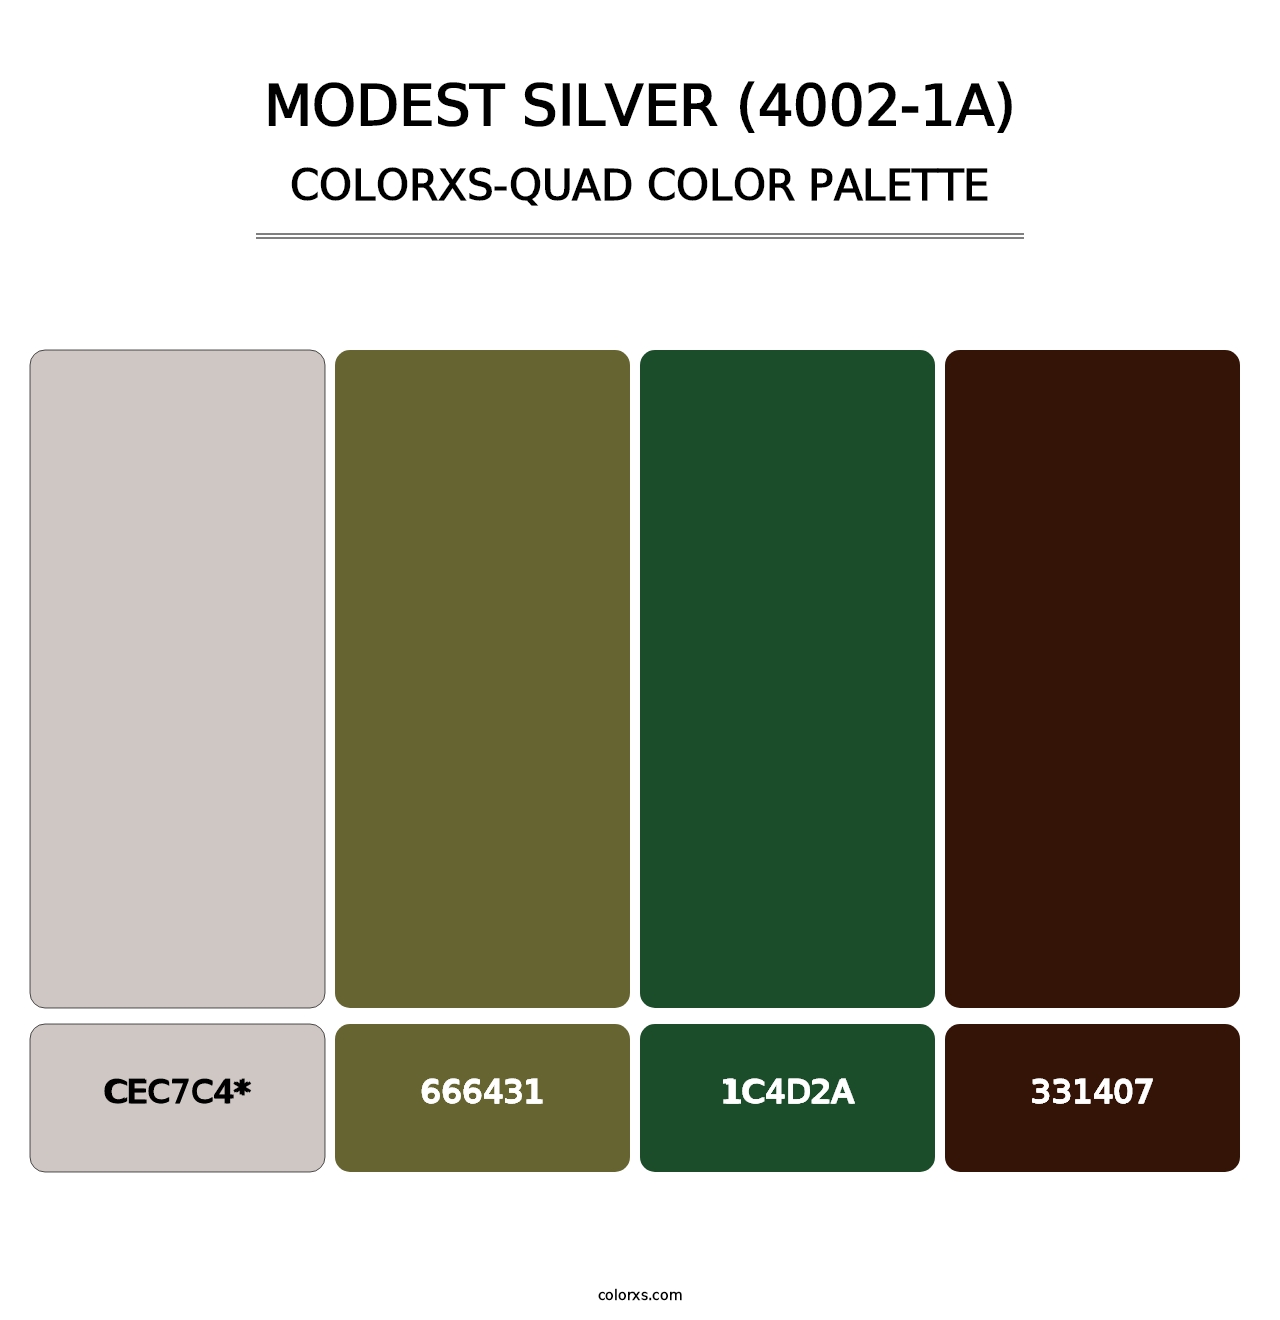 Modest Silver (4002-1A) - Colorxs Quad Palette